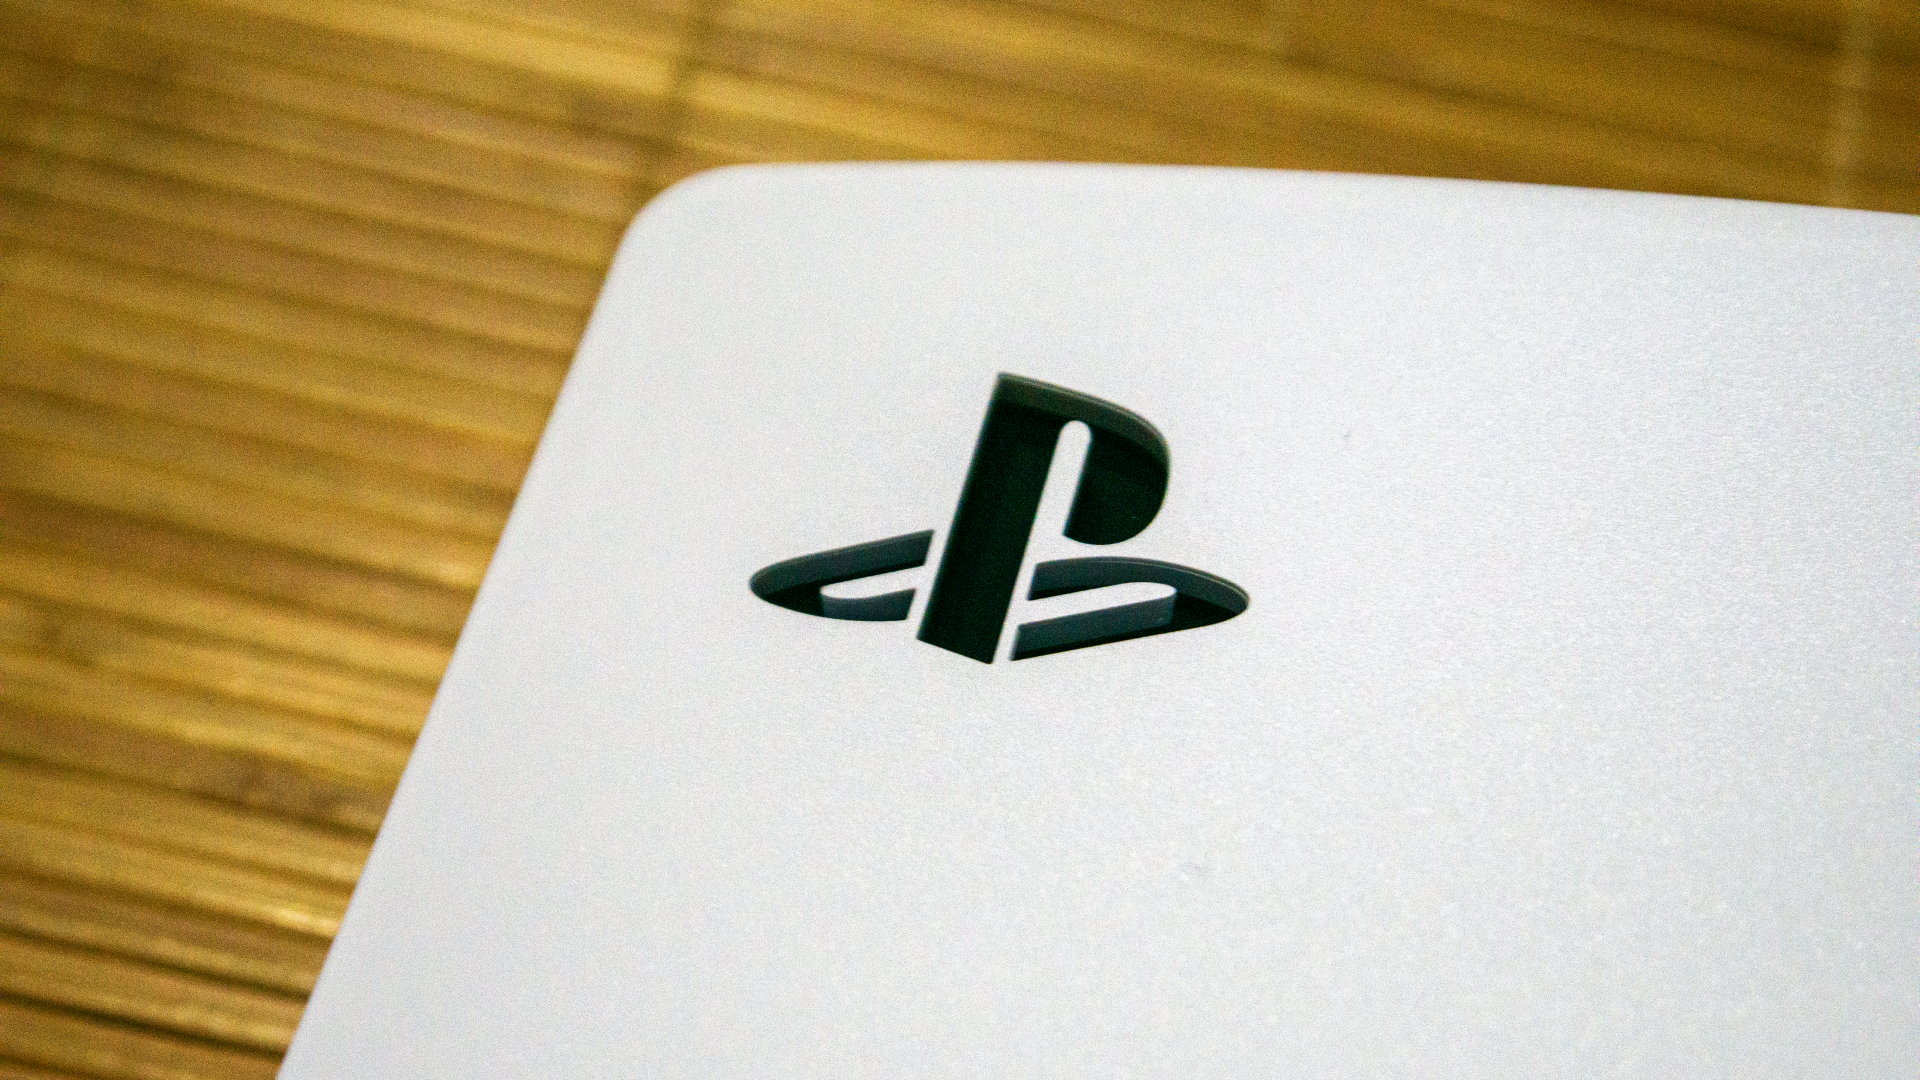 Playstation 5 im Test: Next-Gen-Konsole mit 3D-Audio und großartigem  Gamepad | TechStage